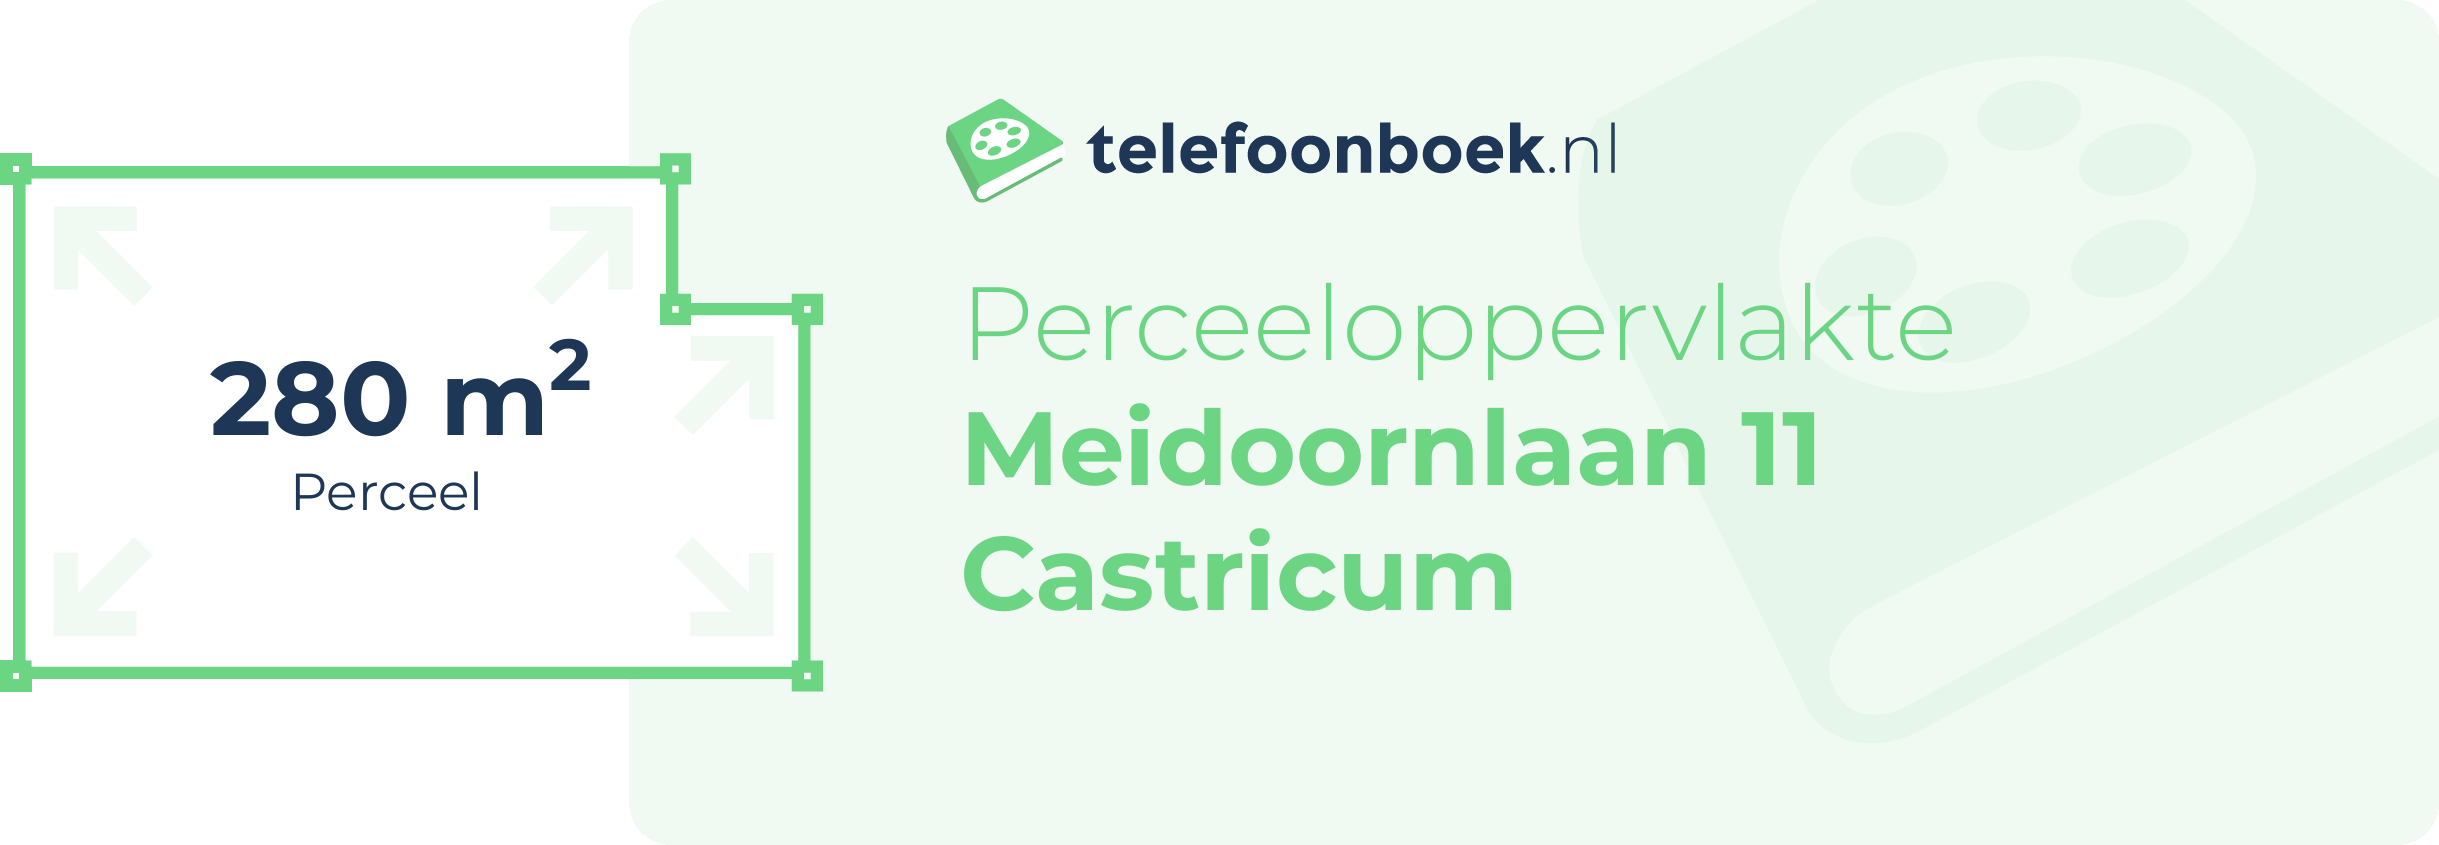 Perceeloppervlakte Meidoornlaan 11 Castricum